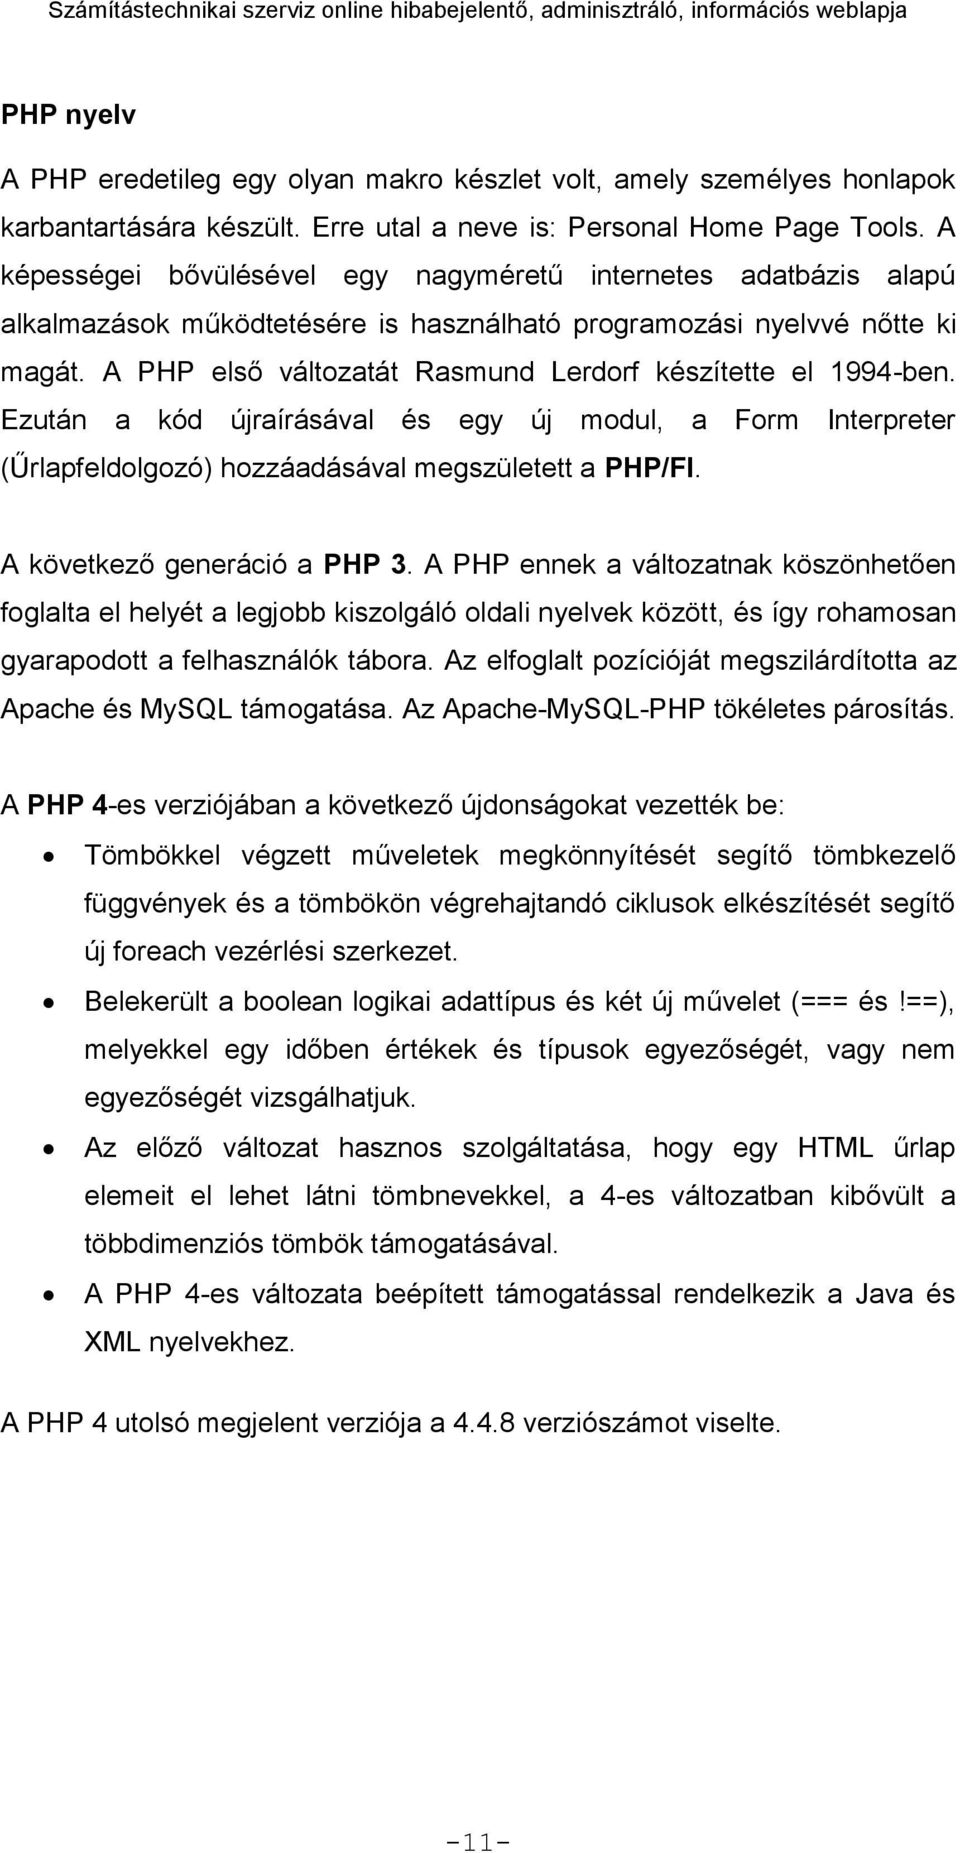 A PHP első változatát Rasmund Lerdorf készítette el 1994-ben. Ezután a kód újraírásával és egy új modul, a Form Interpreter (Űrlapfeldolgozó) hozzáadásával megszületett a PHP/FI.